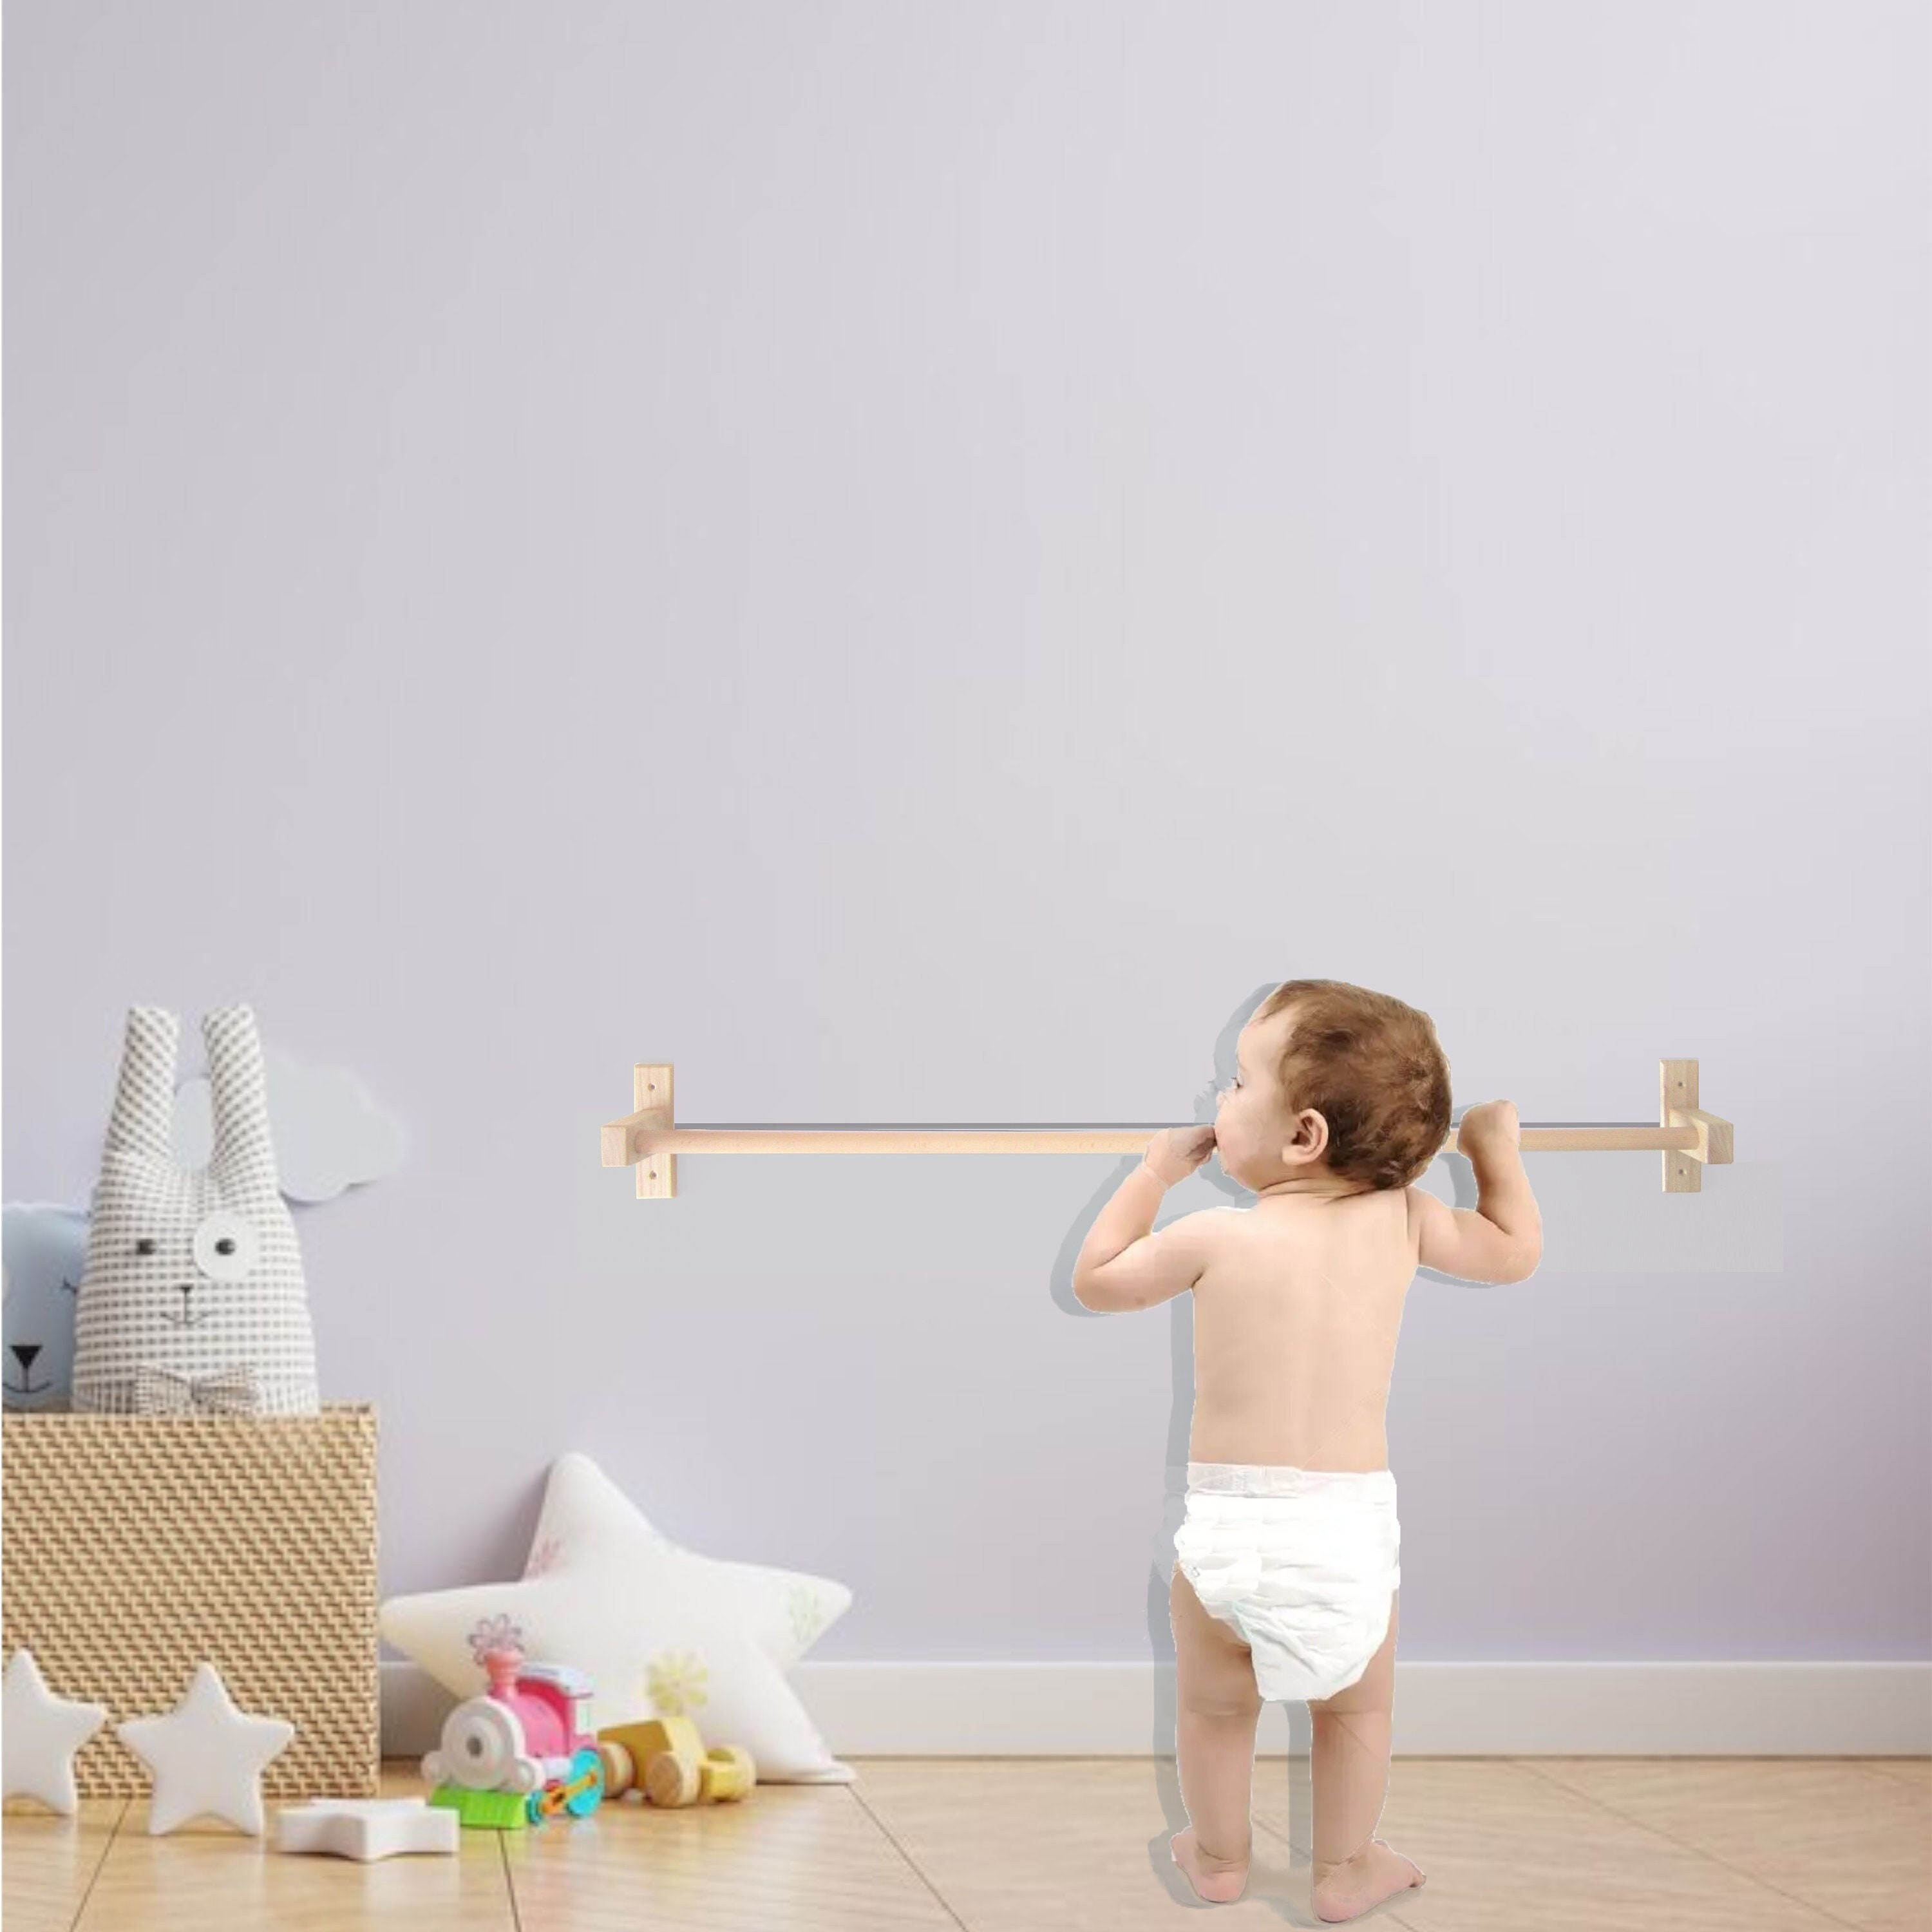 Juguetes Montessori para bebés en colorines (2023) ⭐